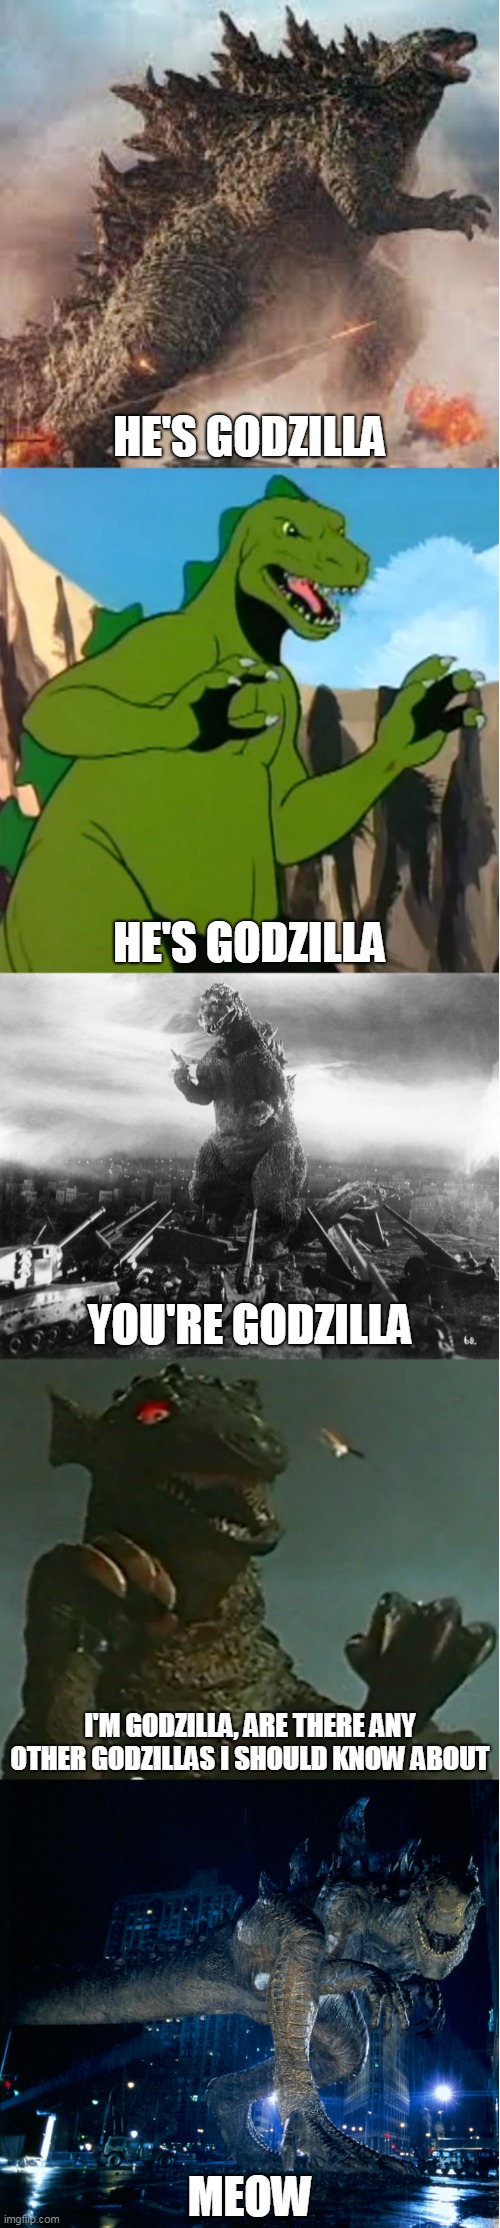 The Last Godzilla On Earth | HE'S GODZILLA; HE'S GODZILLA; YOU'RE GODZILLA; I'M GODZILLA, ARE THERE ANY OTHER GODZILLAS I SHOULD KNOW ABOUT; MEOW | image tagged in godzilla,zilla,gorgo,godzilla 2014,godzilla 1954,godzilla 1998 | made w/ Imgflip meme maker